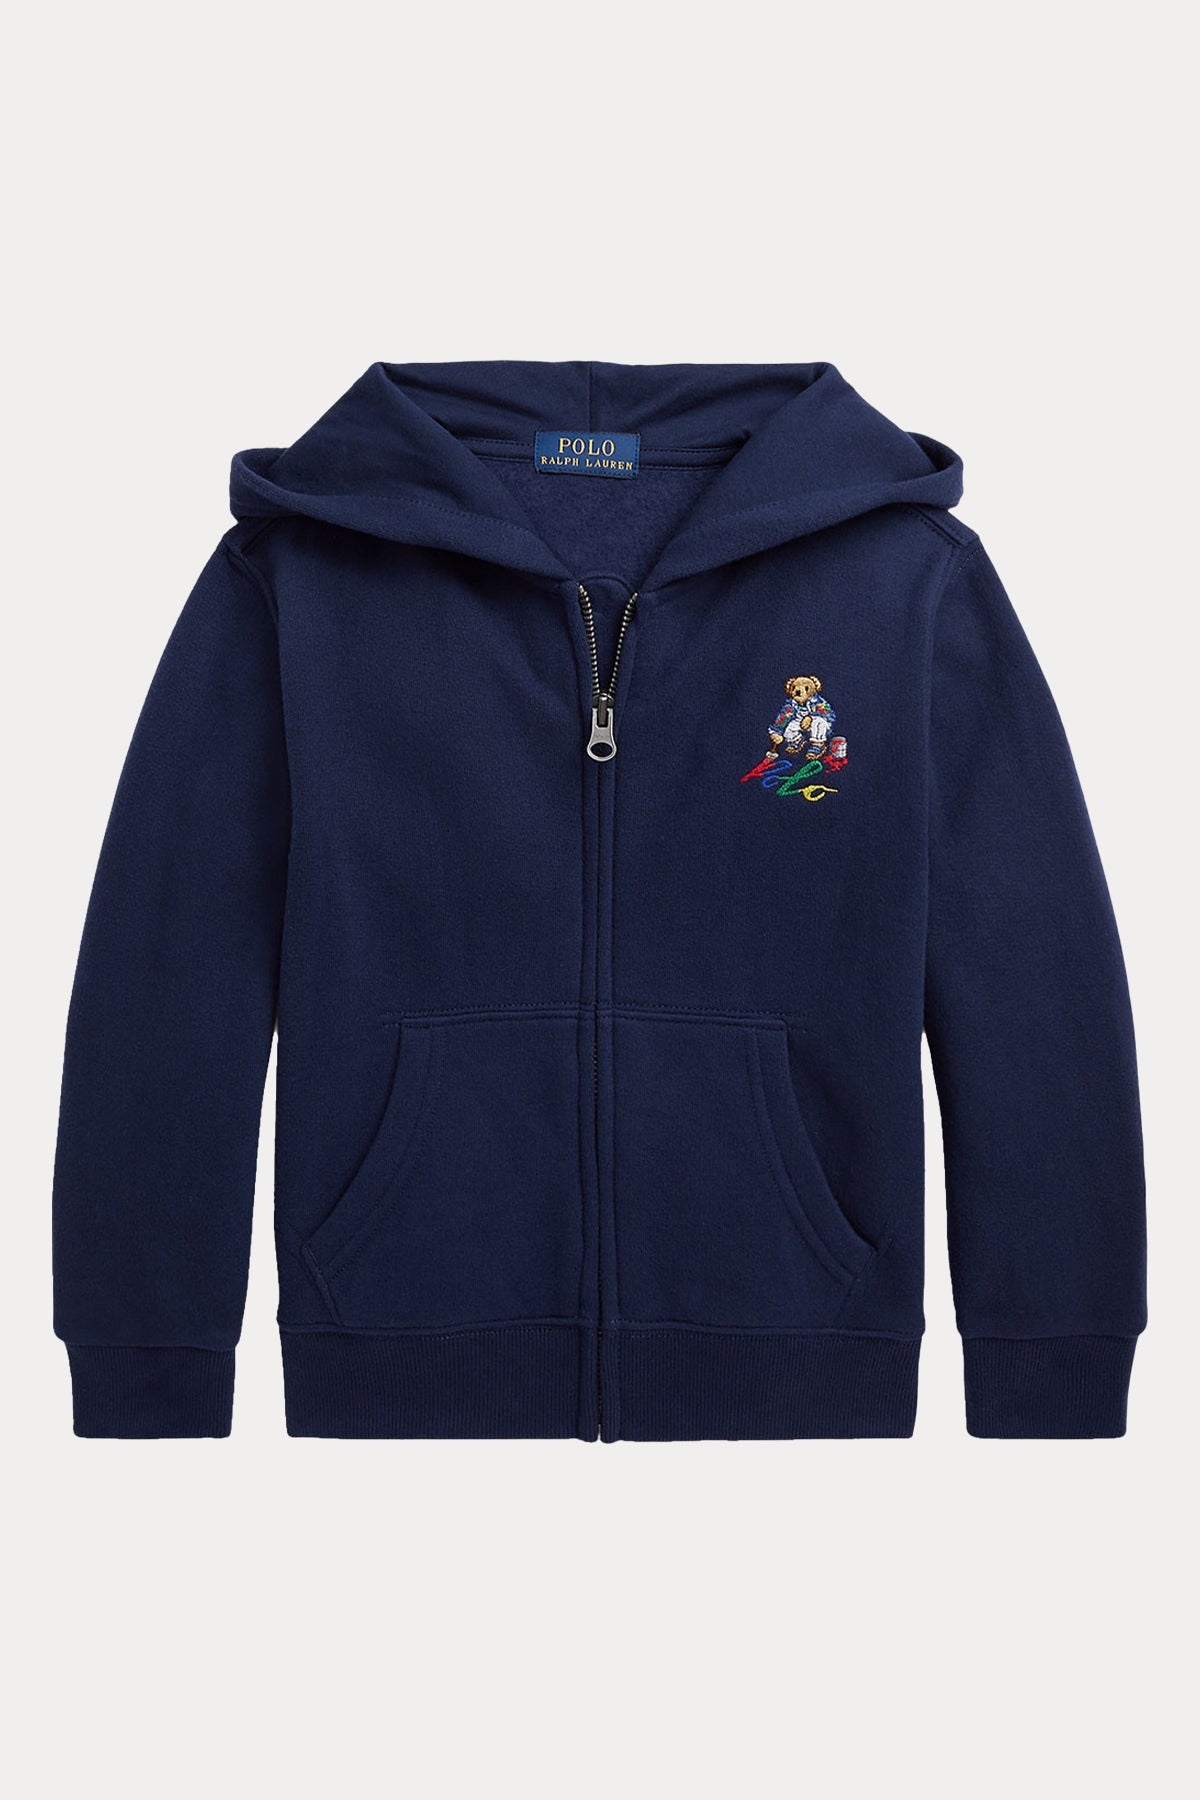 Polo Ralph Lauren Kids 2-7 Yaş Unisex Çocuk Kapüşonlu Polo Bear Sweatshirt Ceket